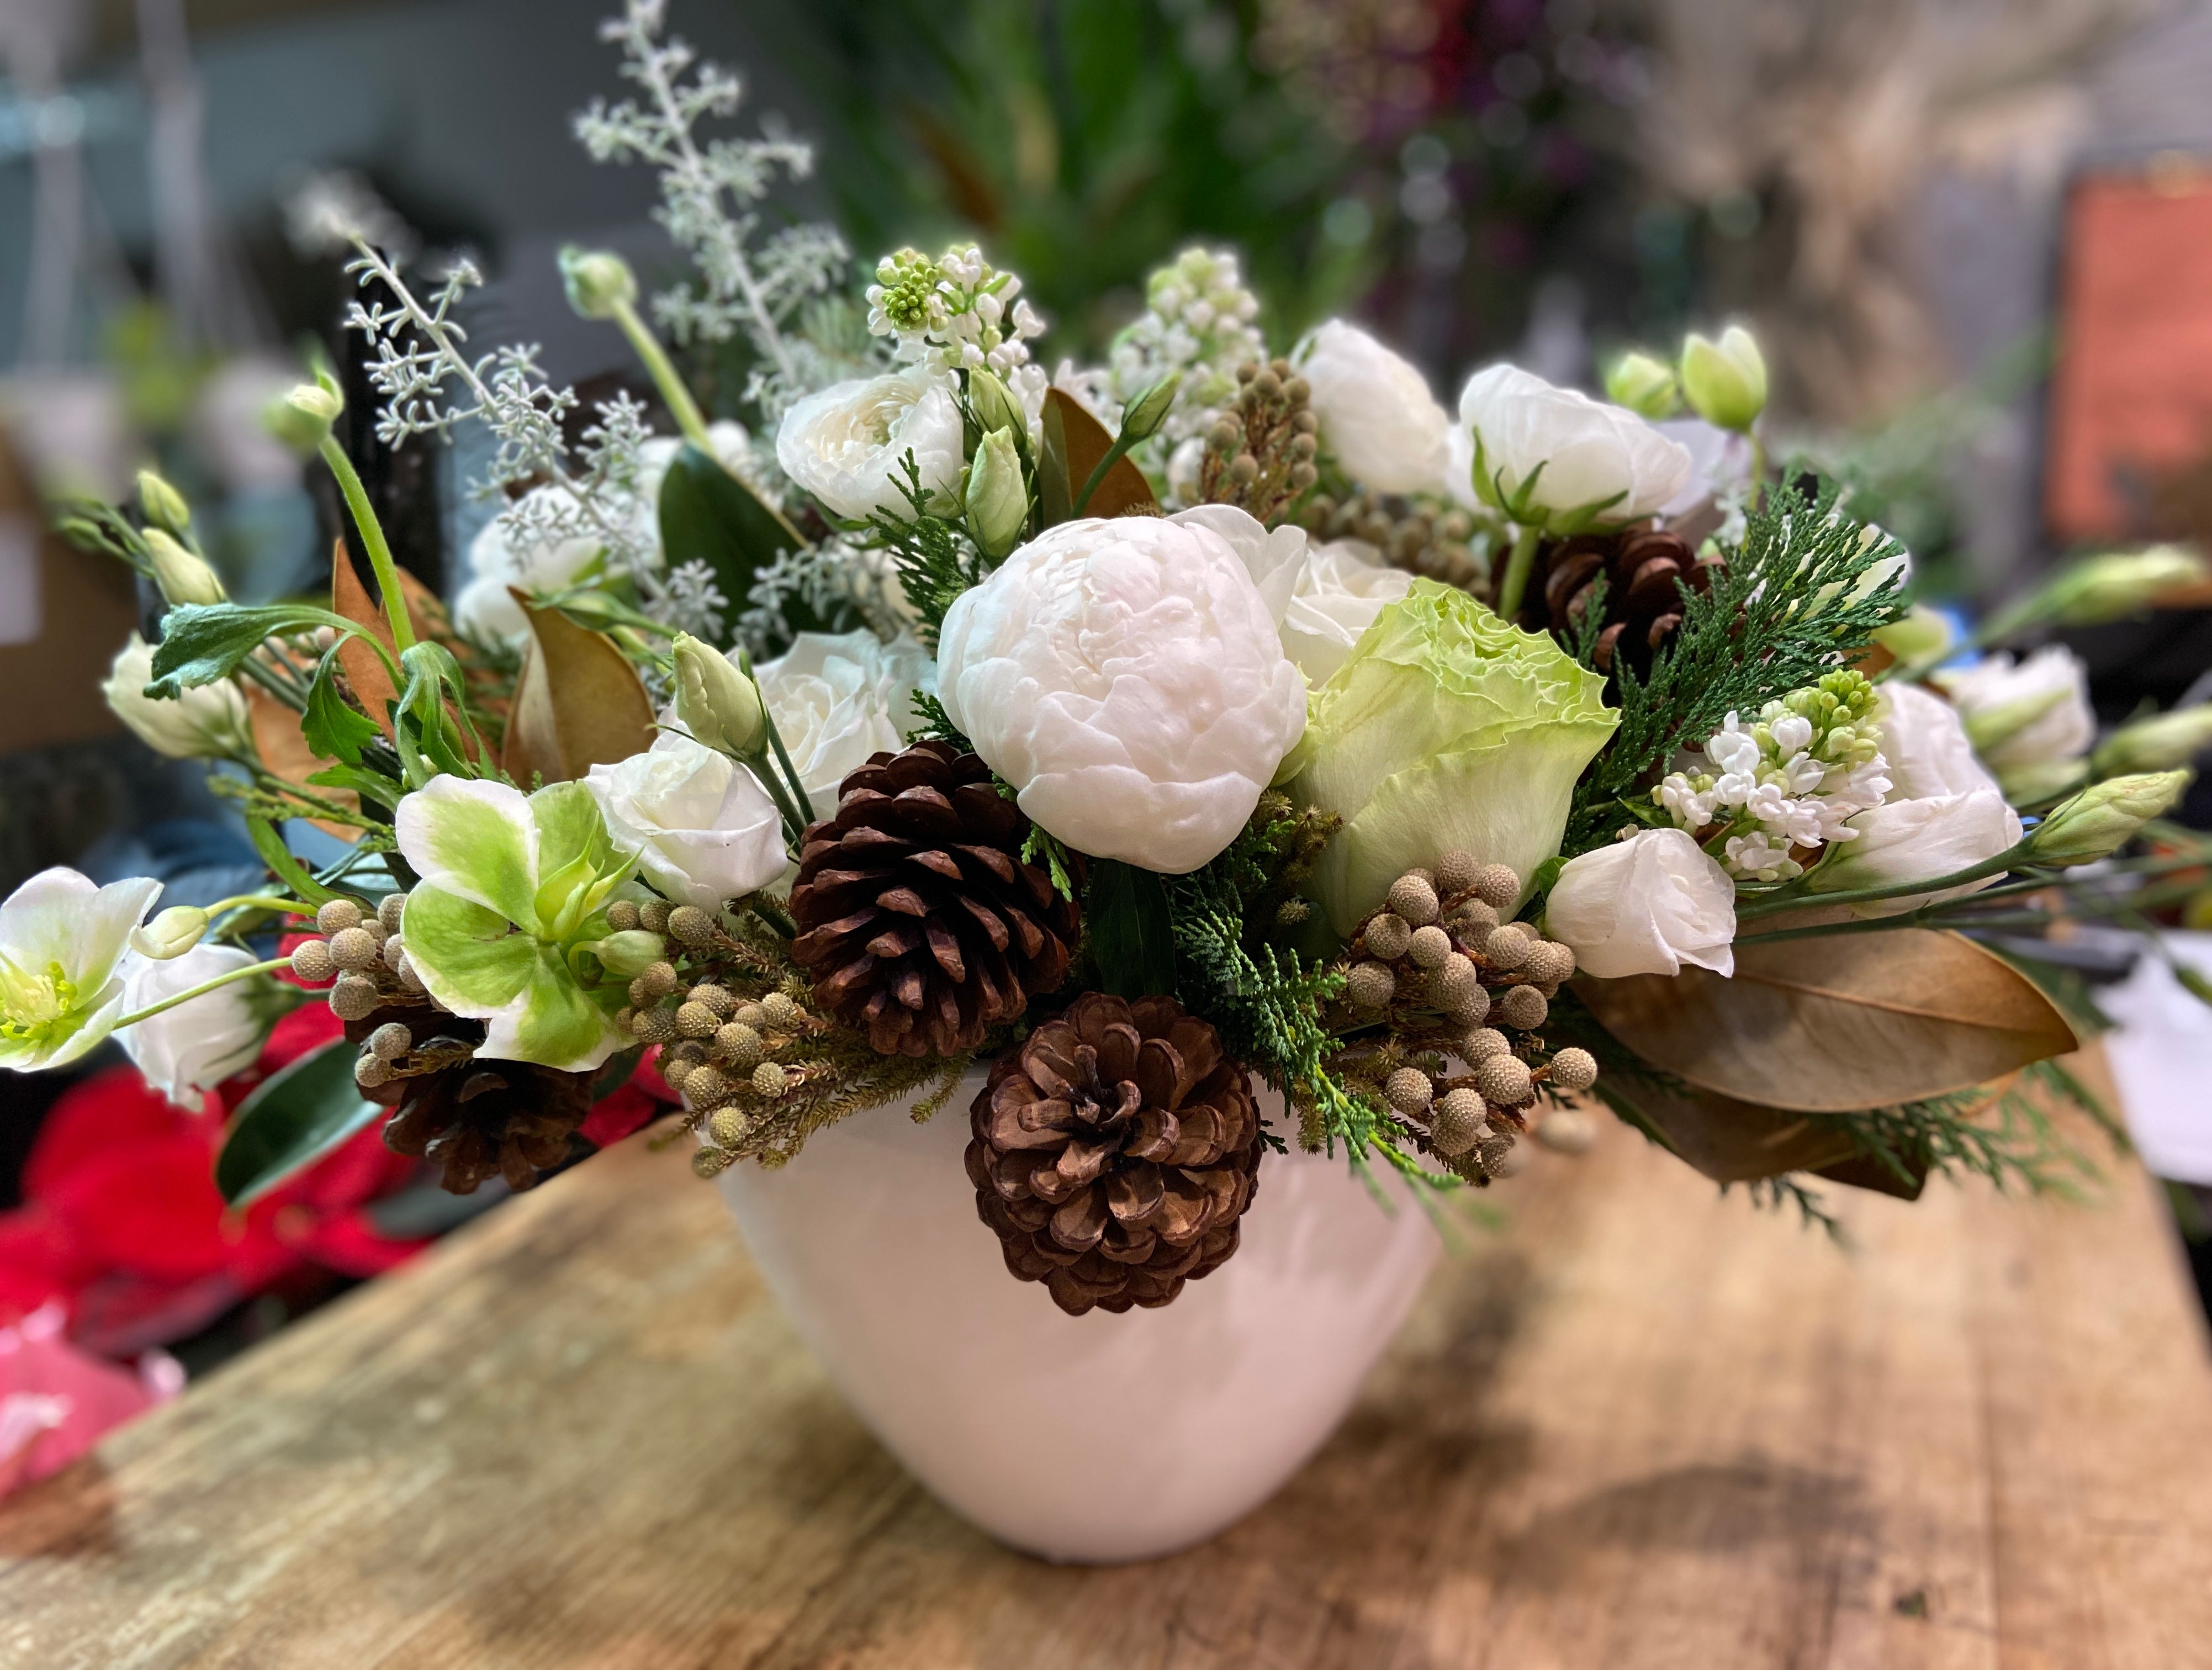 Winter Wonderland- with Peonies, Ranunculus, Hellebore and Christmas Greens